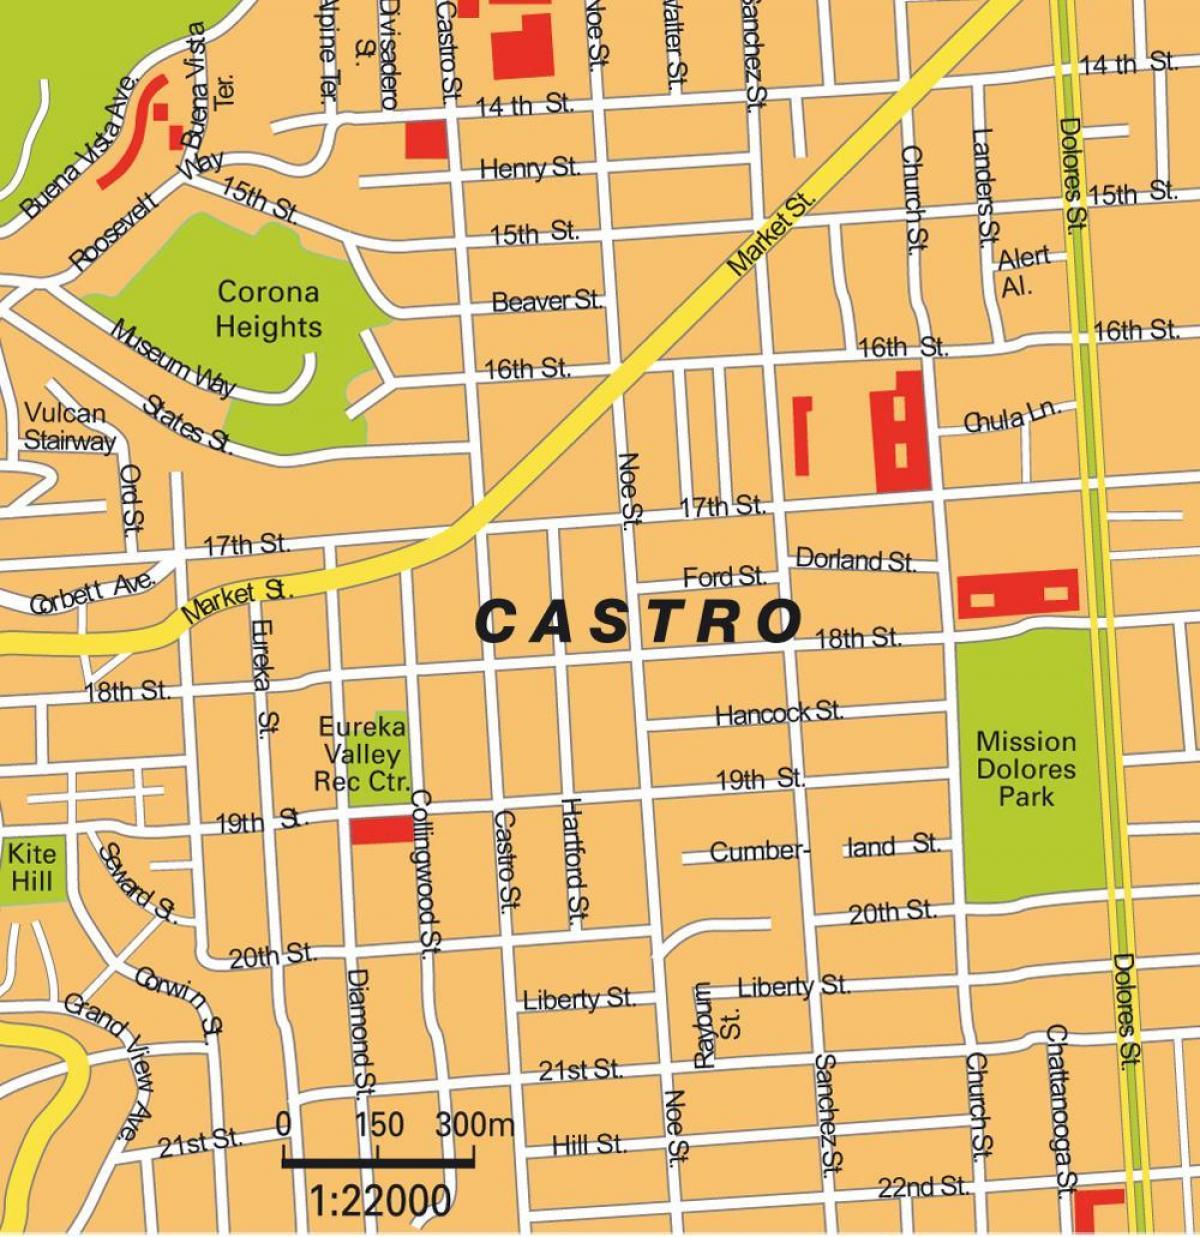 zemljevid castro district v San Franciscu